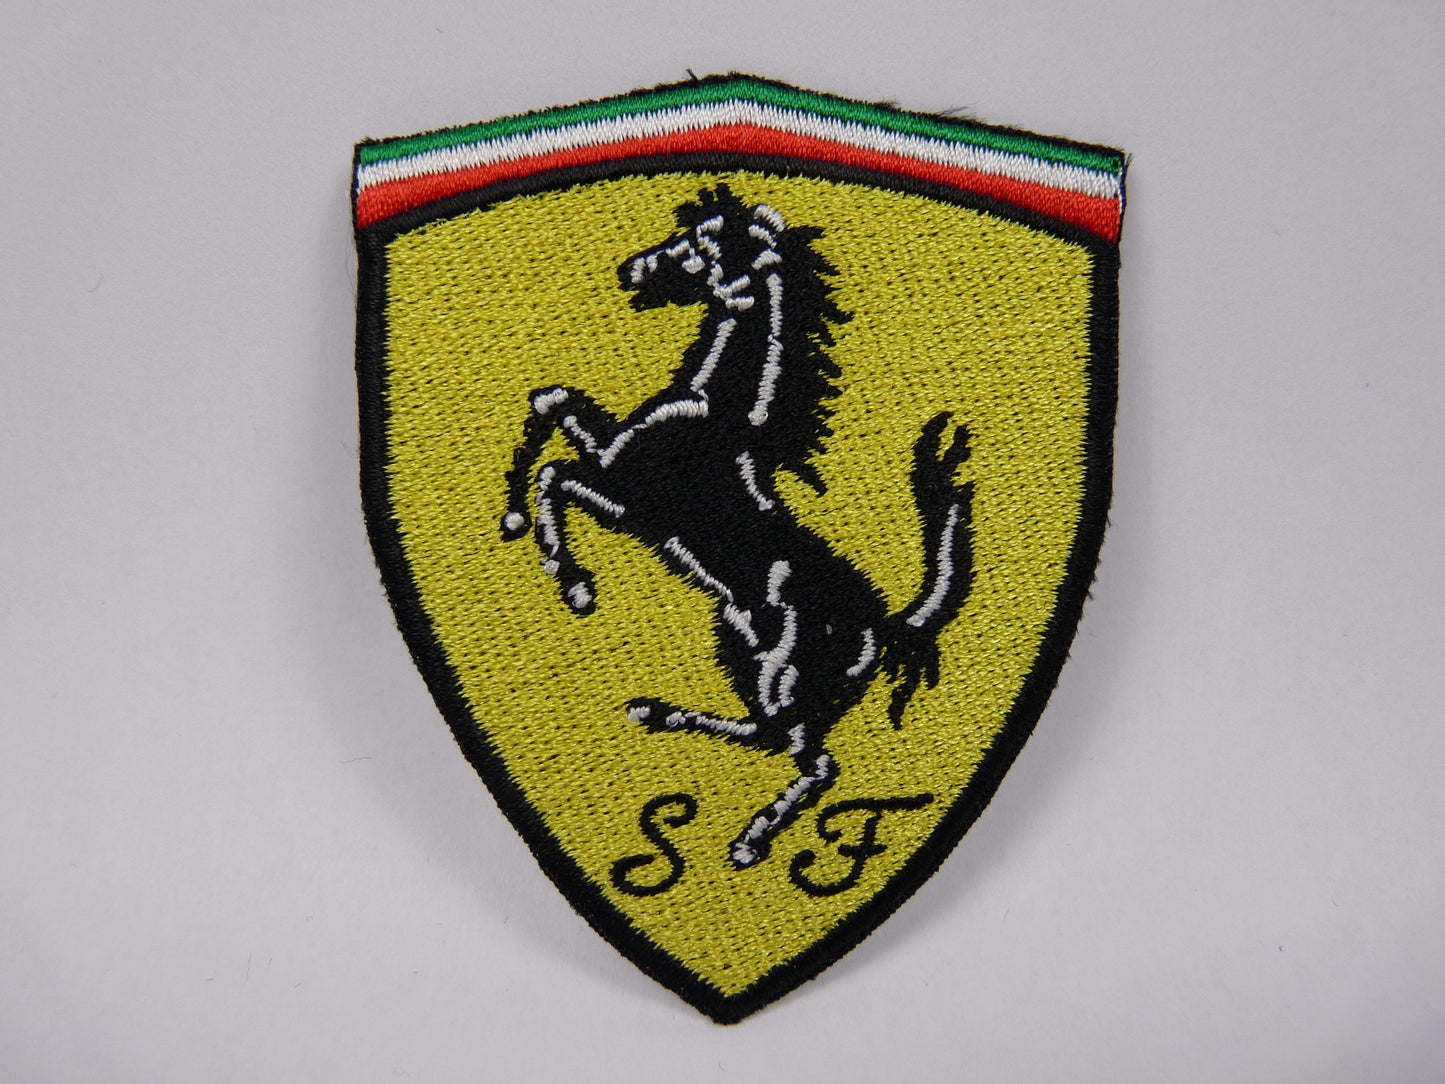 PTC57 Patch brodé thermocollé : logo Ferrari écusson largeur environ 6.4 cm hauteur environ 8 cm